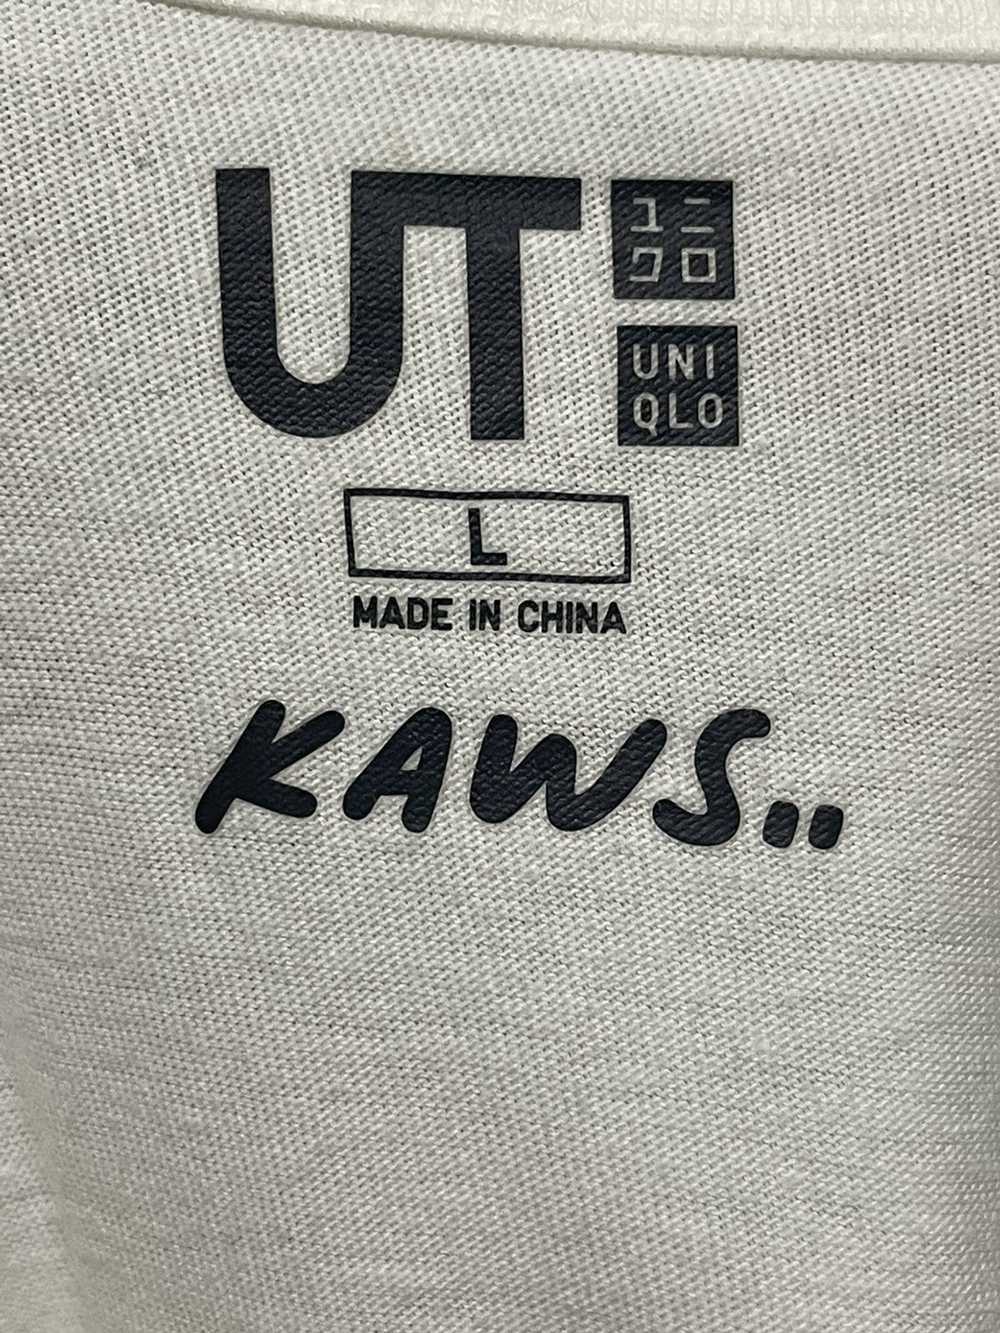 Kaws × Uniqlo KAWS UNIQLO FLAYED COMPANION TEE - image 5